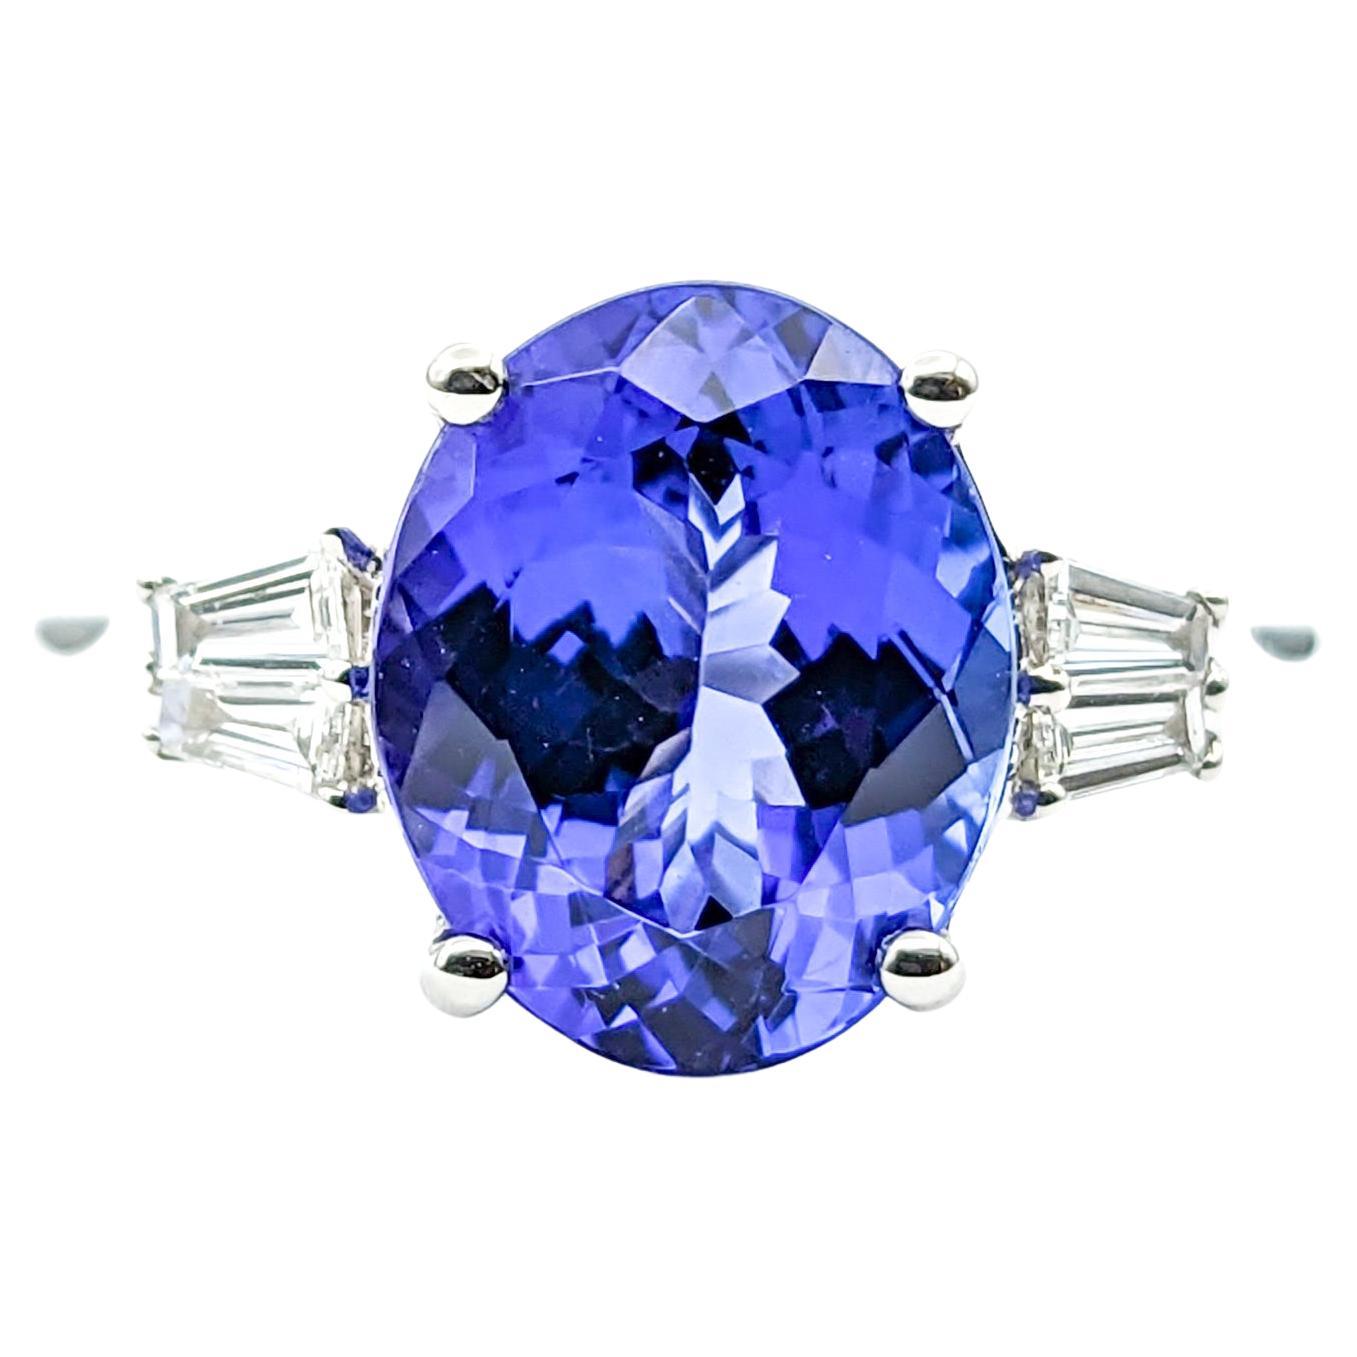 3ct Blue Tanzanite & Diamond Ring In 950pt platinum For Sale